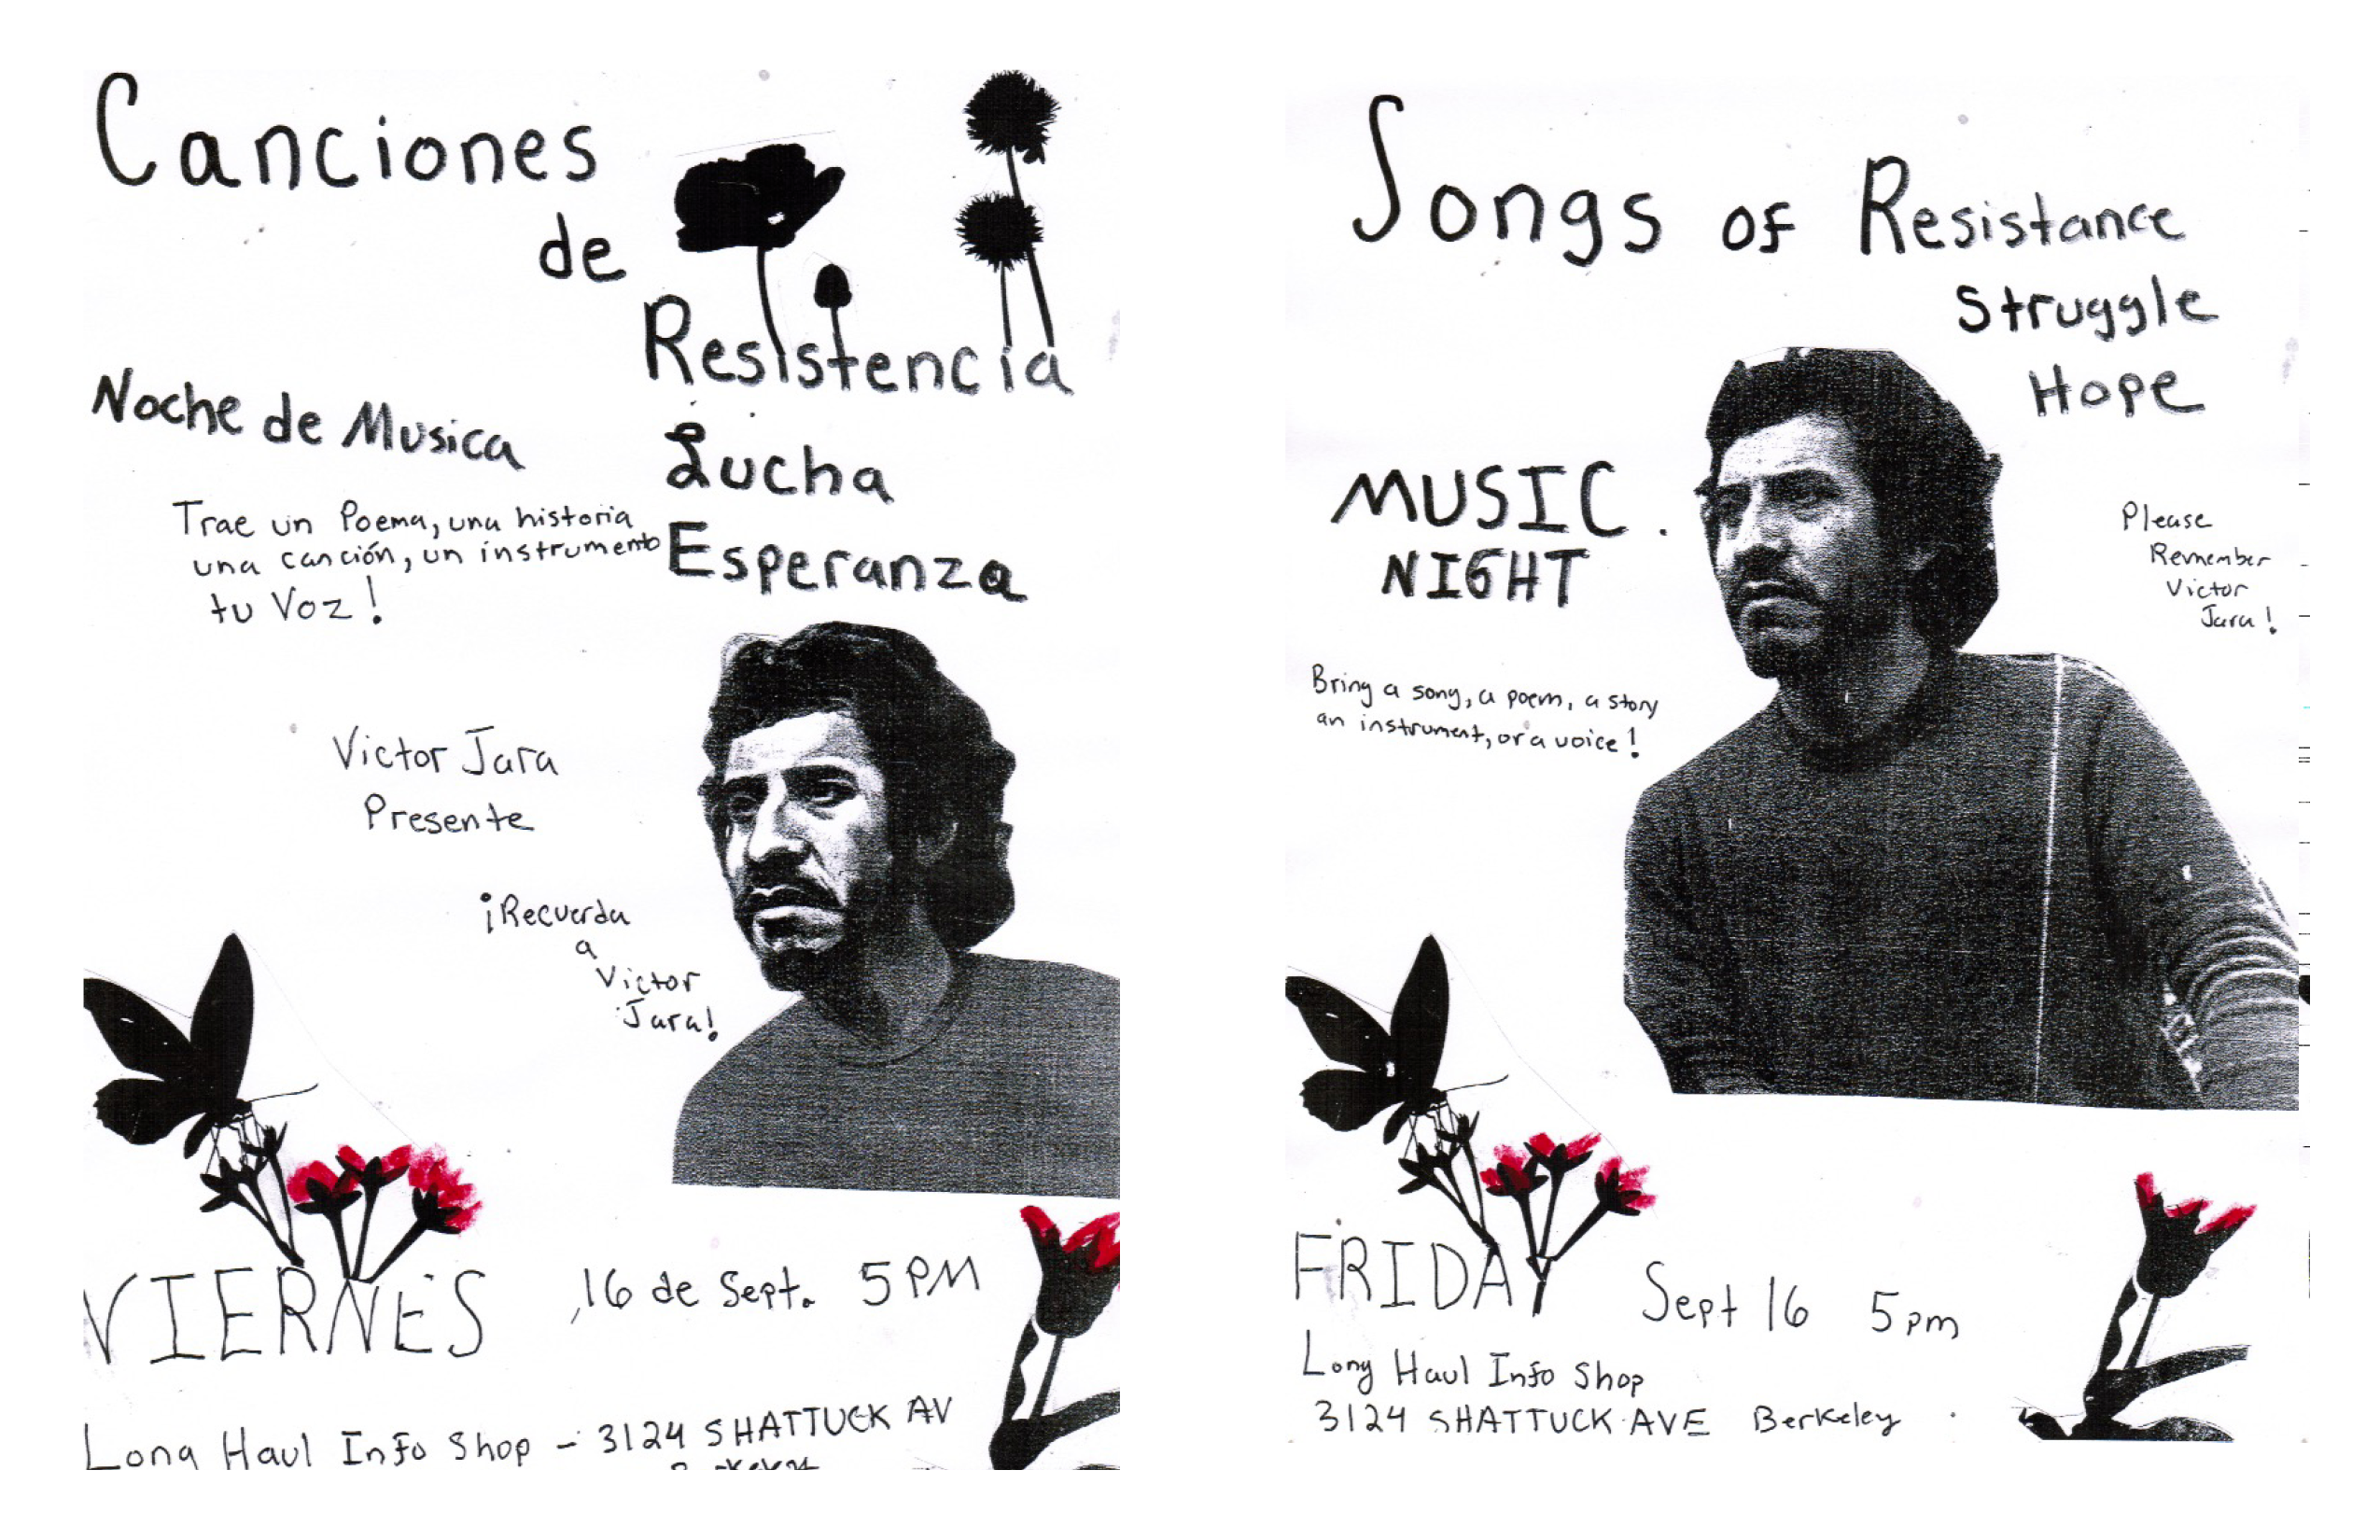 SONGS of Resistance, Struggle, Hope / CANCIONES de Resistencia, Lucha, Esperanza